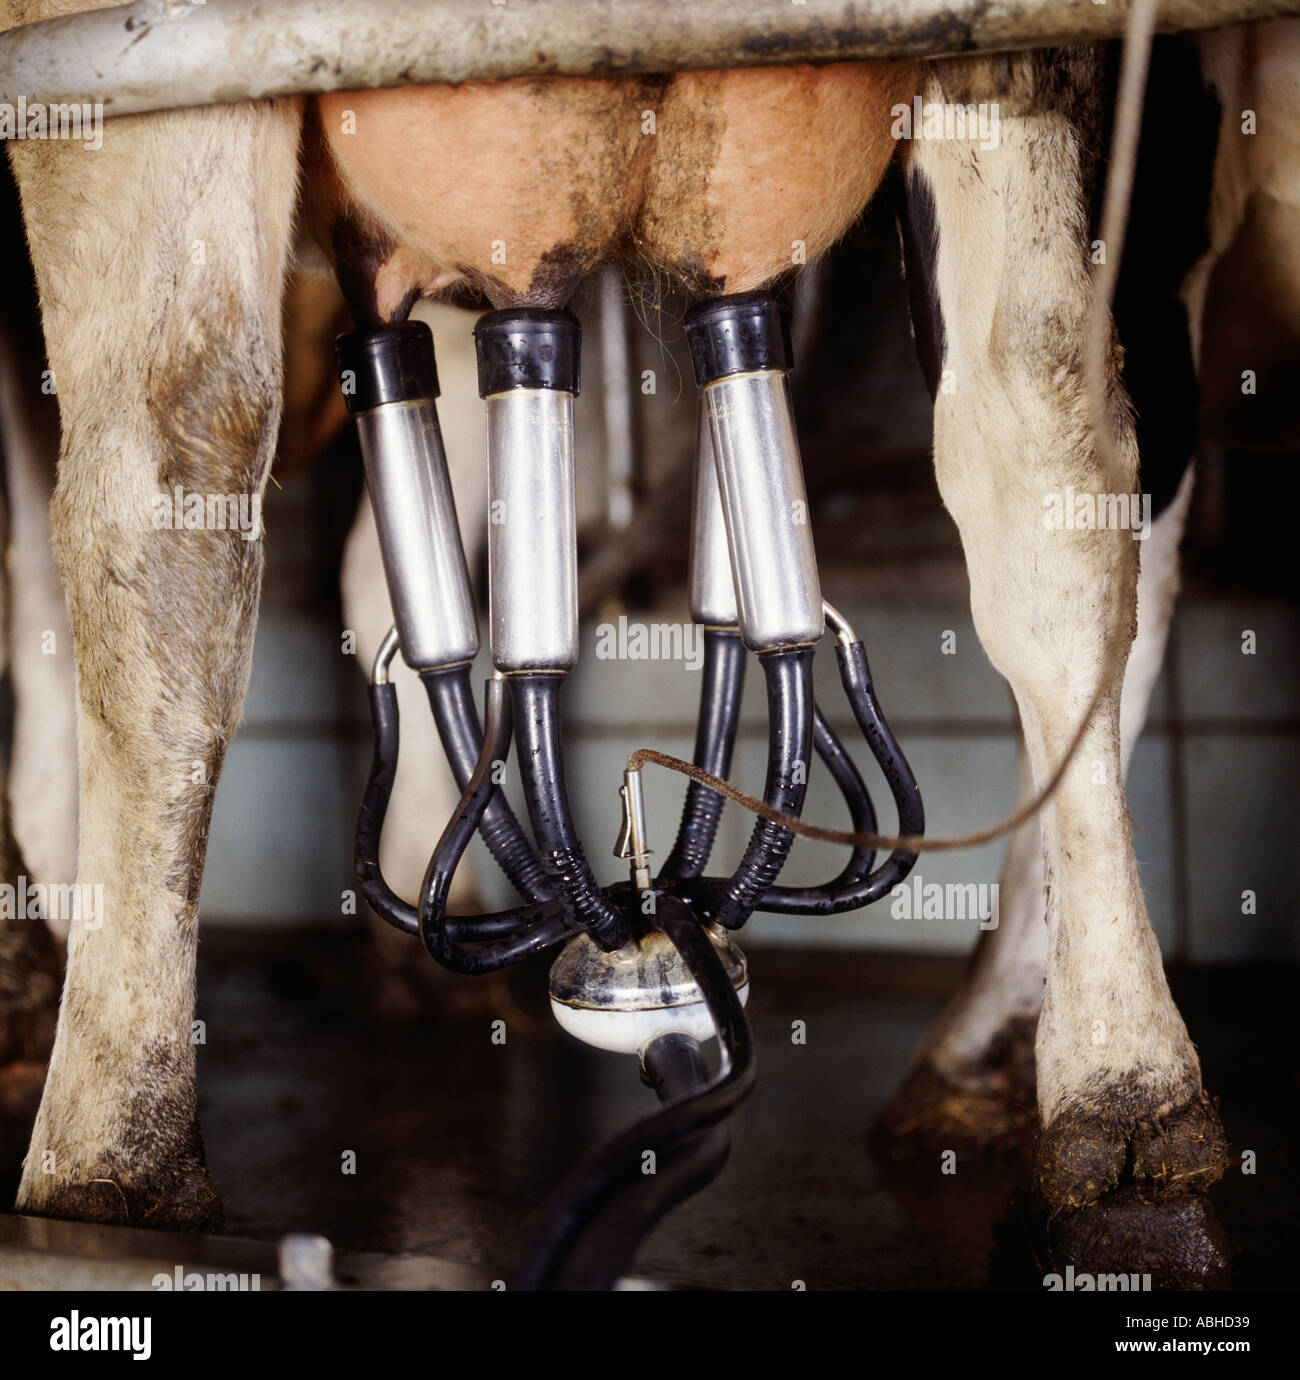 Euter einer Kuh Holstein Friesian mit einer Melkmaschine Cluster während de...